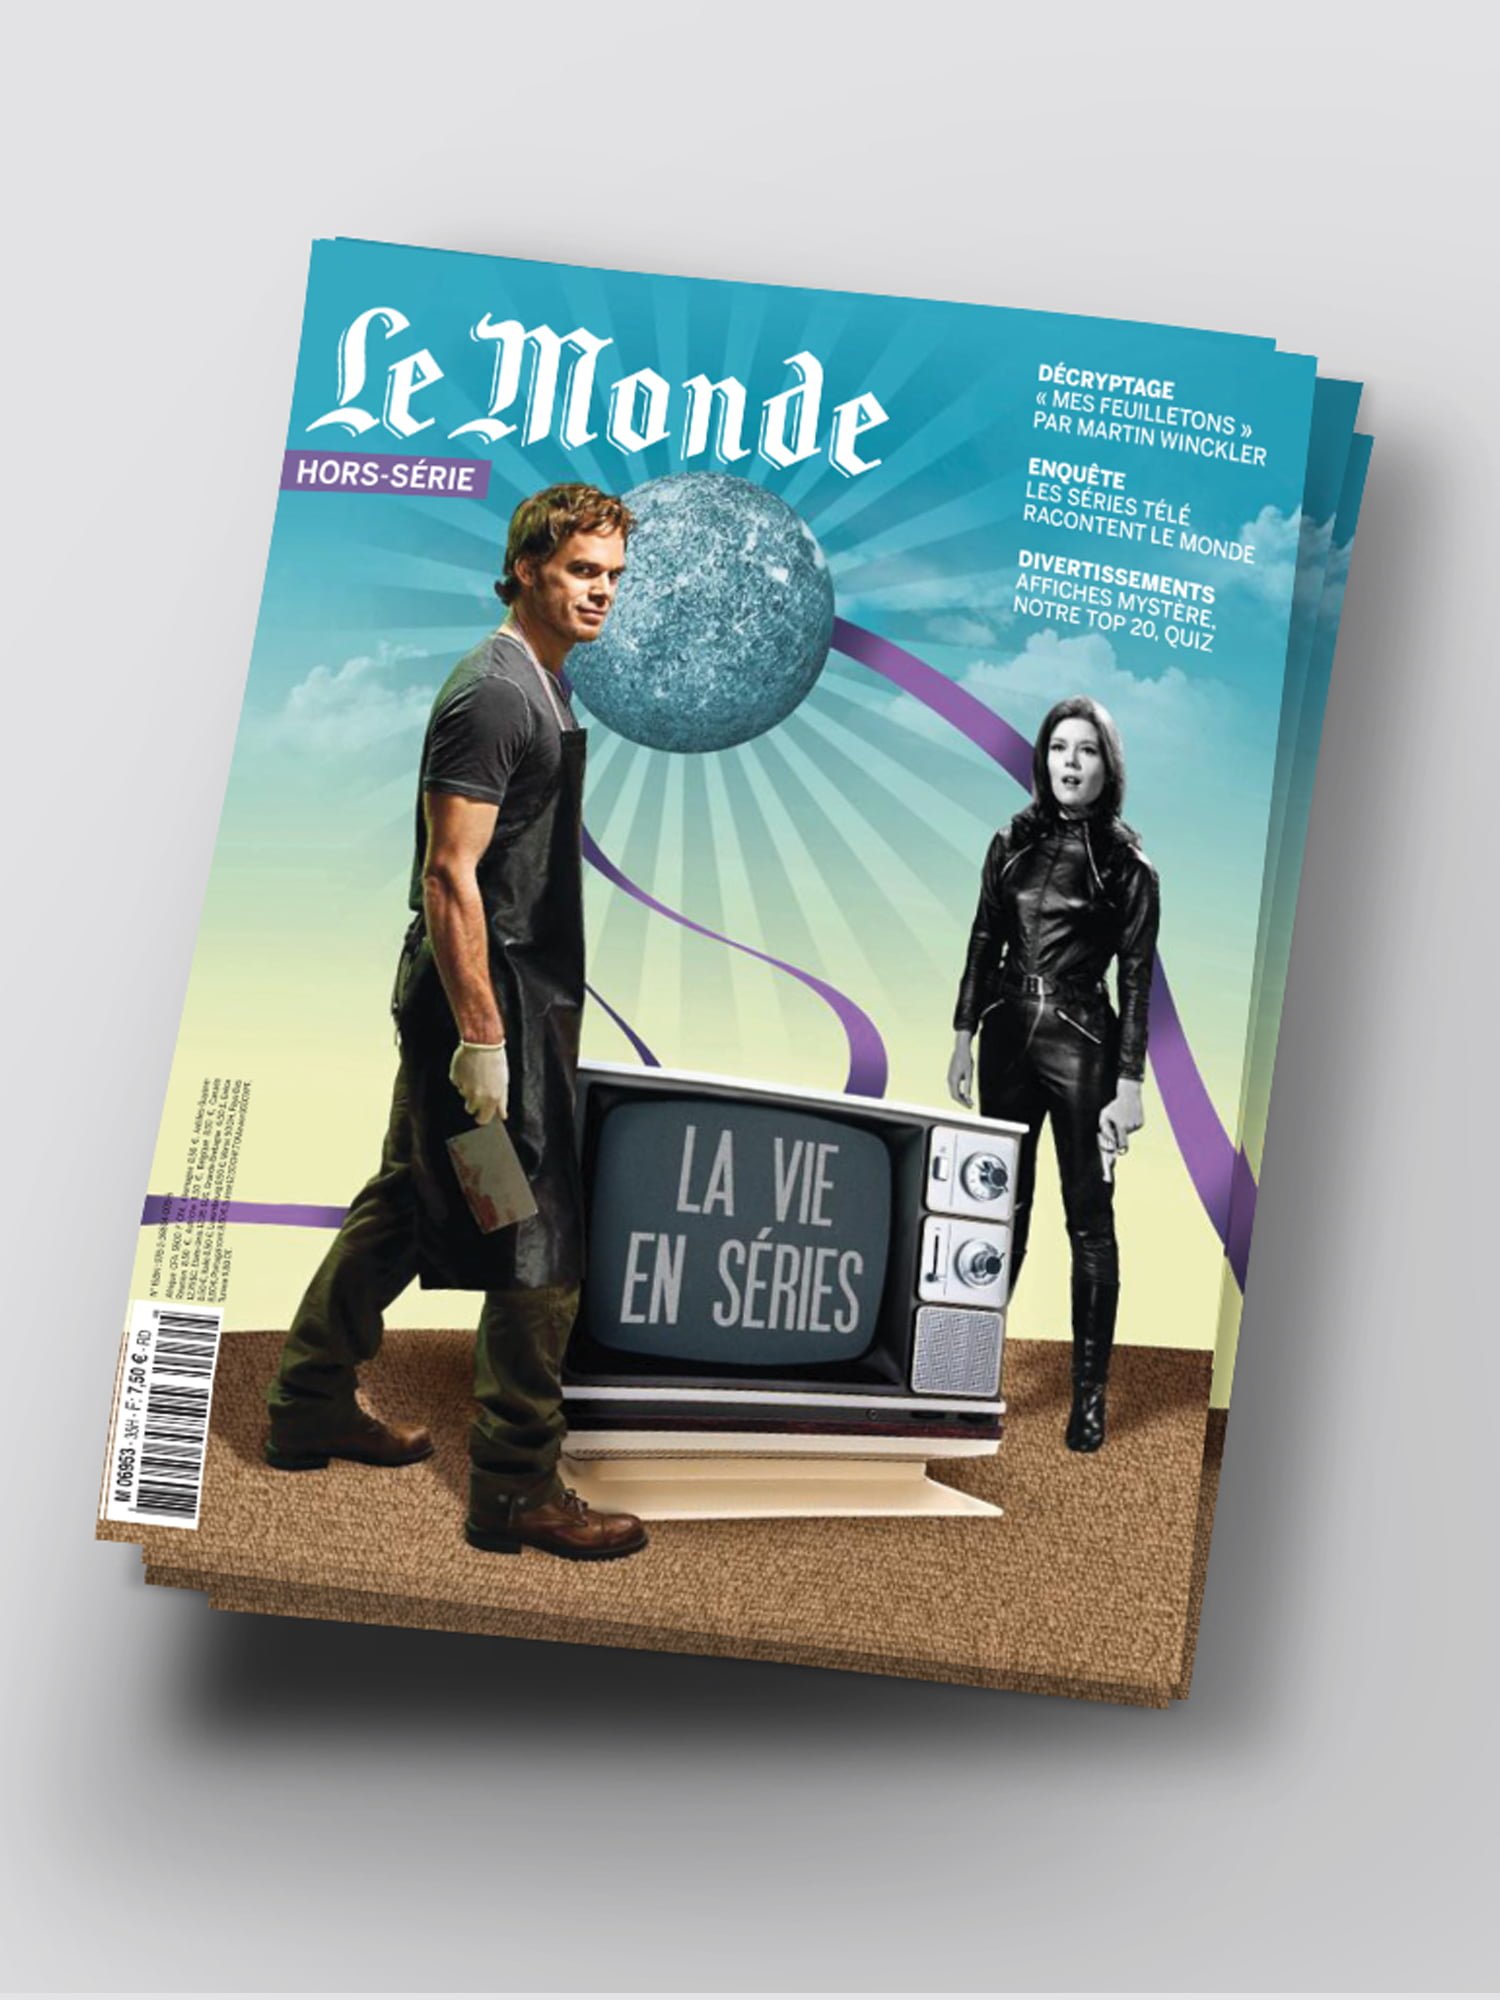 Le Monde,hors-série,aurelie bert,presse,magazine,design graphique